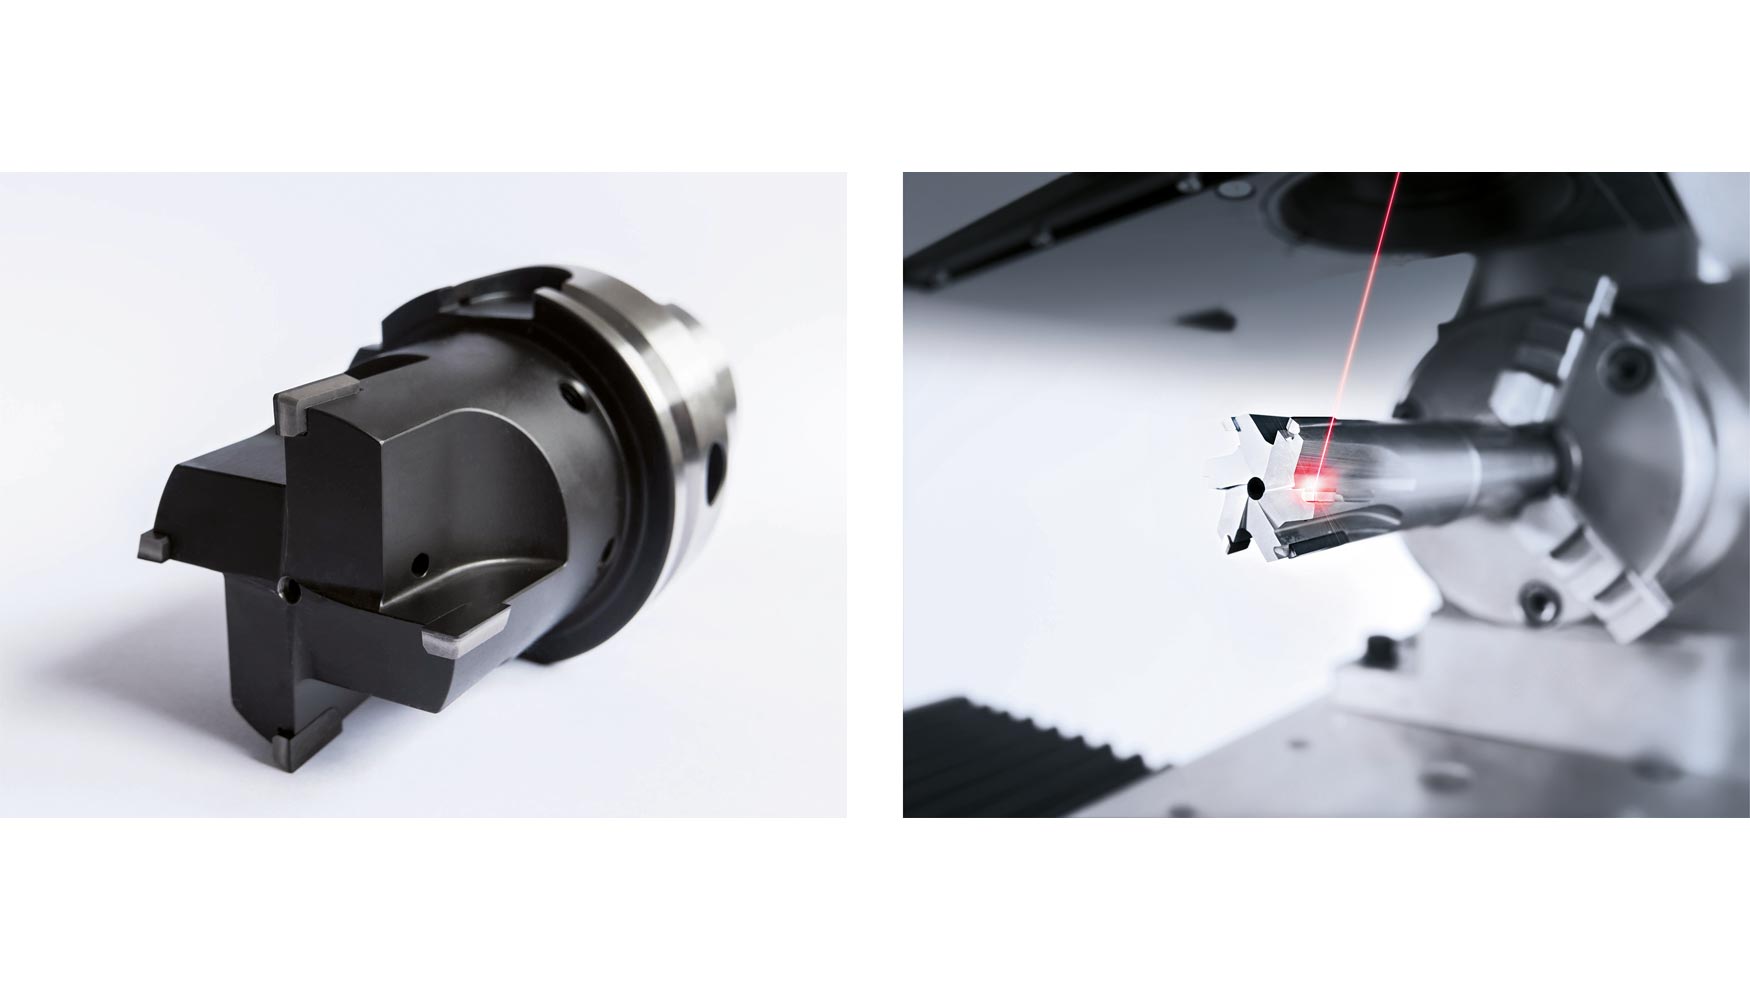 Gran rea de trabajo: las herramientas con dimetros hasta 200 mm y longitudes de 344 mm tienen cabida en Lasertec 20 PrecisionTool...